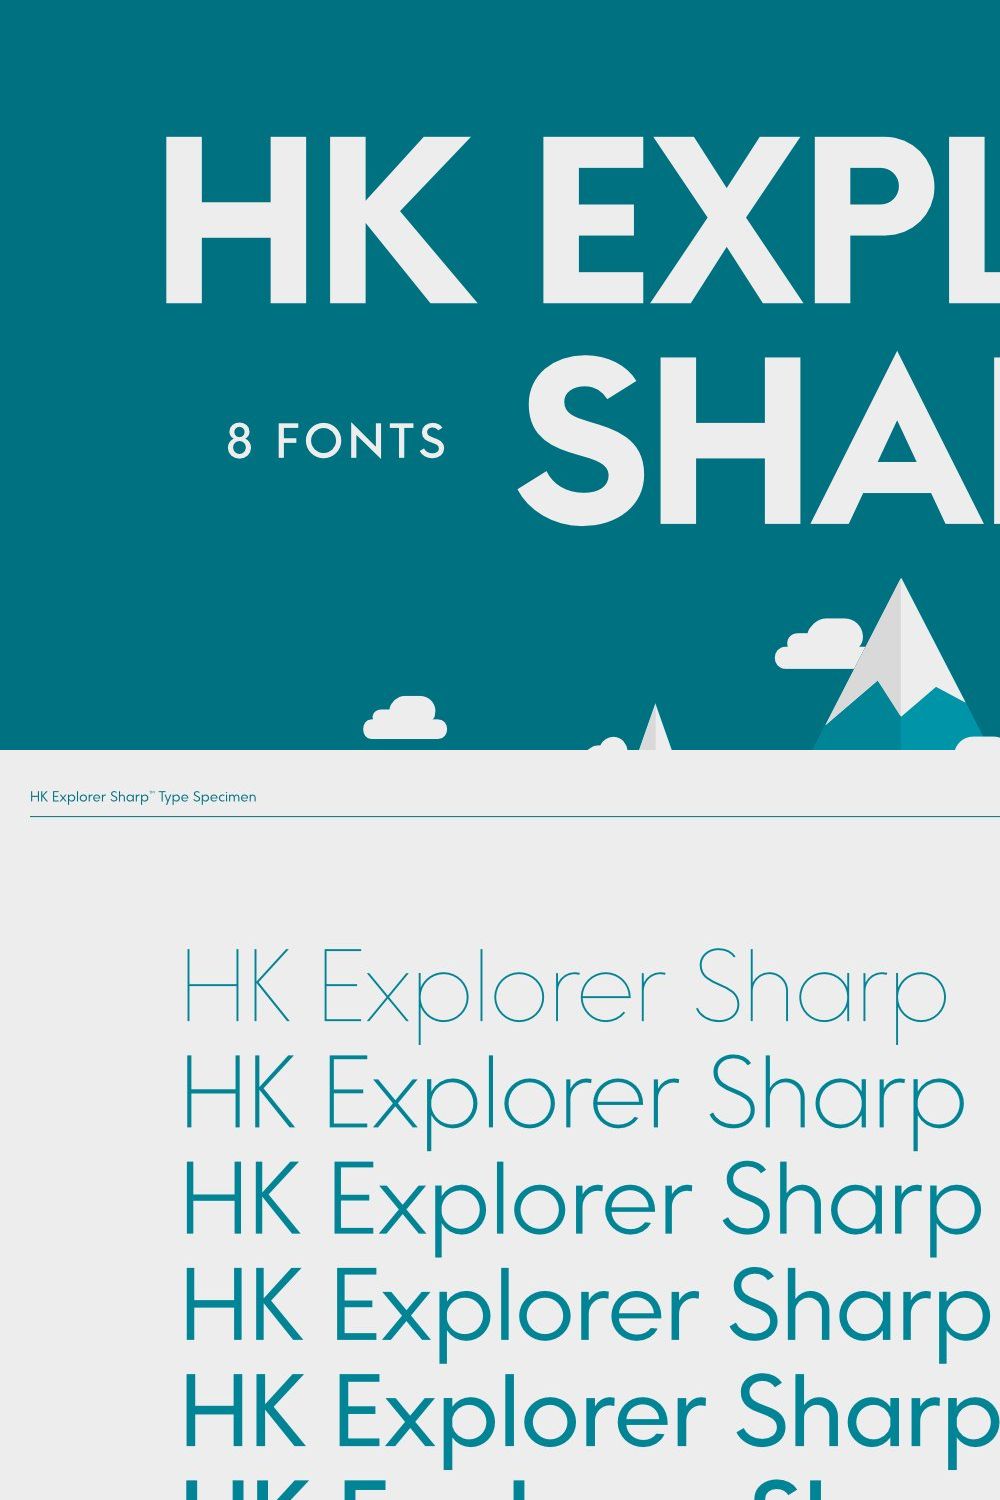 HK Explorer Sharp pinterest preview image.